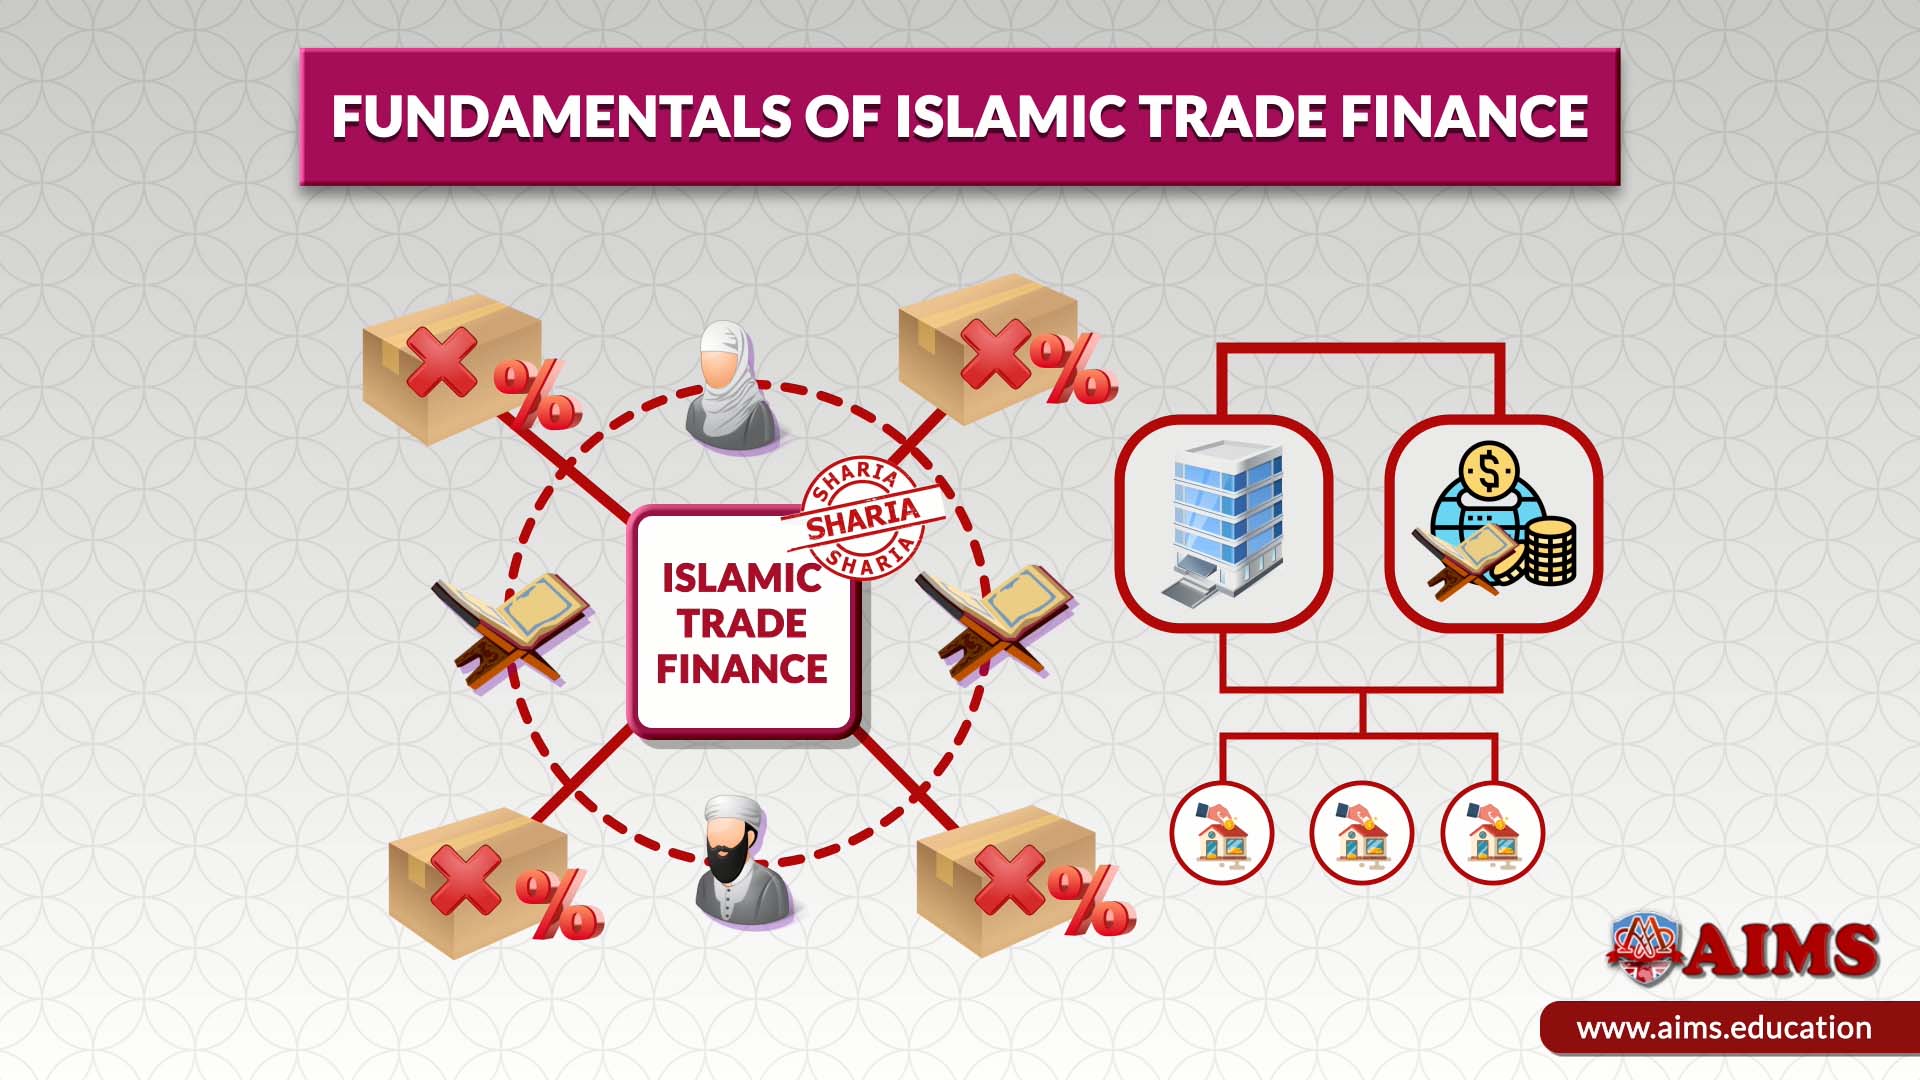 Islamic trade